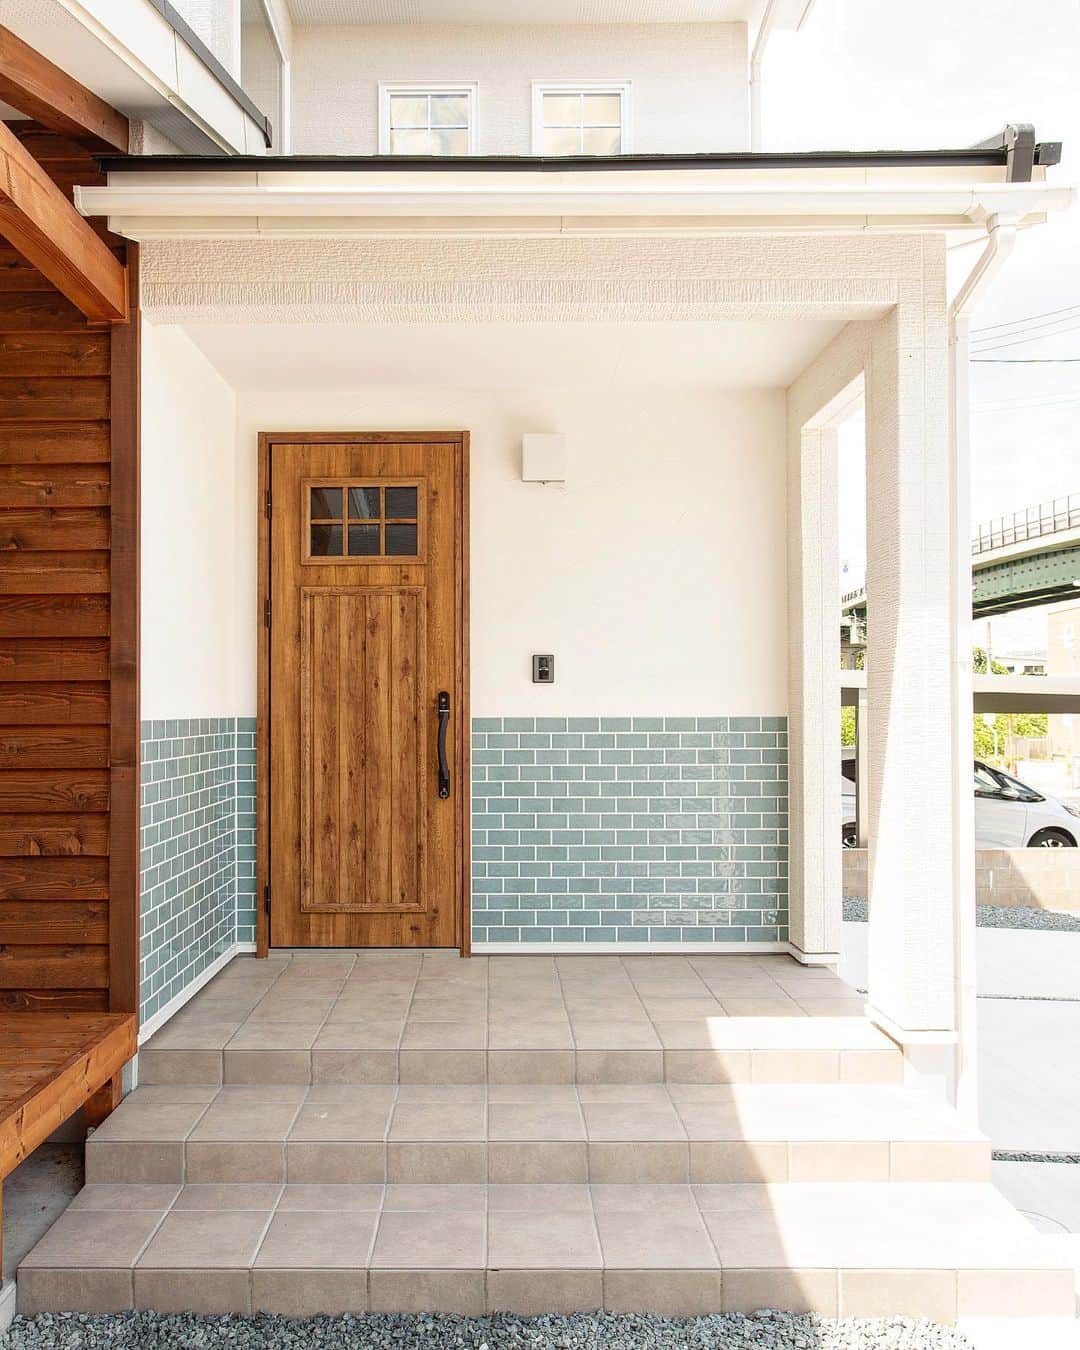 fukui-kensetsuのインスタグラム：「山形市桜田西モデルハウスの玄関です。  白い塗壁に水色タイルを組み合わせて、爽やかな印象に仕上げました。  玄関ドアはスマートコントロールキーを採用し、機能とデザインが両立した玄関になっています✨  #玄関 #玄関インテリア #玄関ポーチ #外壁塗り壁 #外壁タイル #グレーのタイル #モデルハウス #自然塗料 #自然塗料リボス #自然素材の家 #自然素材の家づくり #マイホーム  +++--------------------+++  山形暮らしの家づくり  #福井建設#山形市#工務店#注文住宅#山形注文住宅#山形の工務店#山形住宅会社  山形の風土に合った注文住宅を建設しています。  ↓プロフィール↓ @fukui_kensetsu  ↓現場のことや日常をご紹介するアカウント↓ @fukui_kensetsu_pr  お問い合わせなど、お気軽にDMしてください♪ +++--------------------+++」